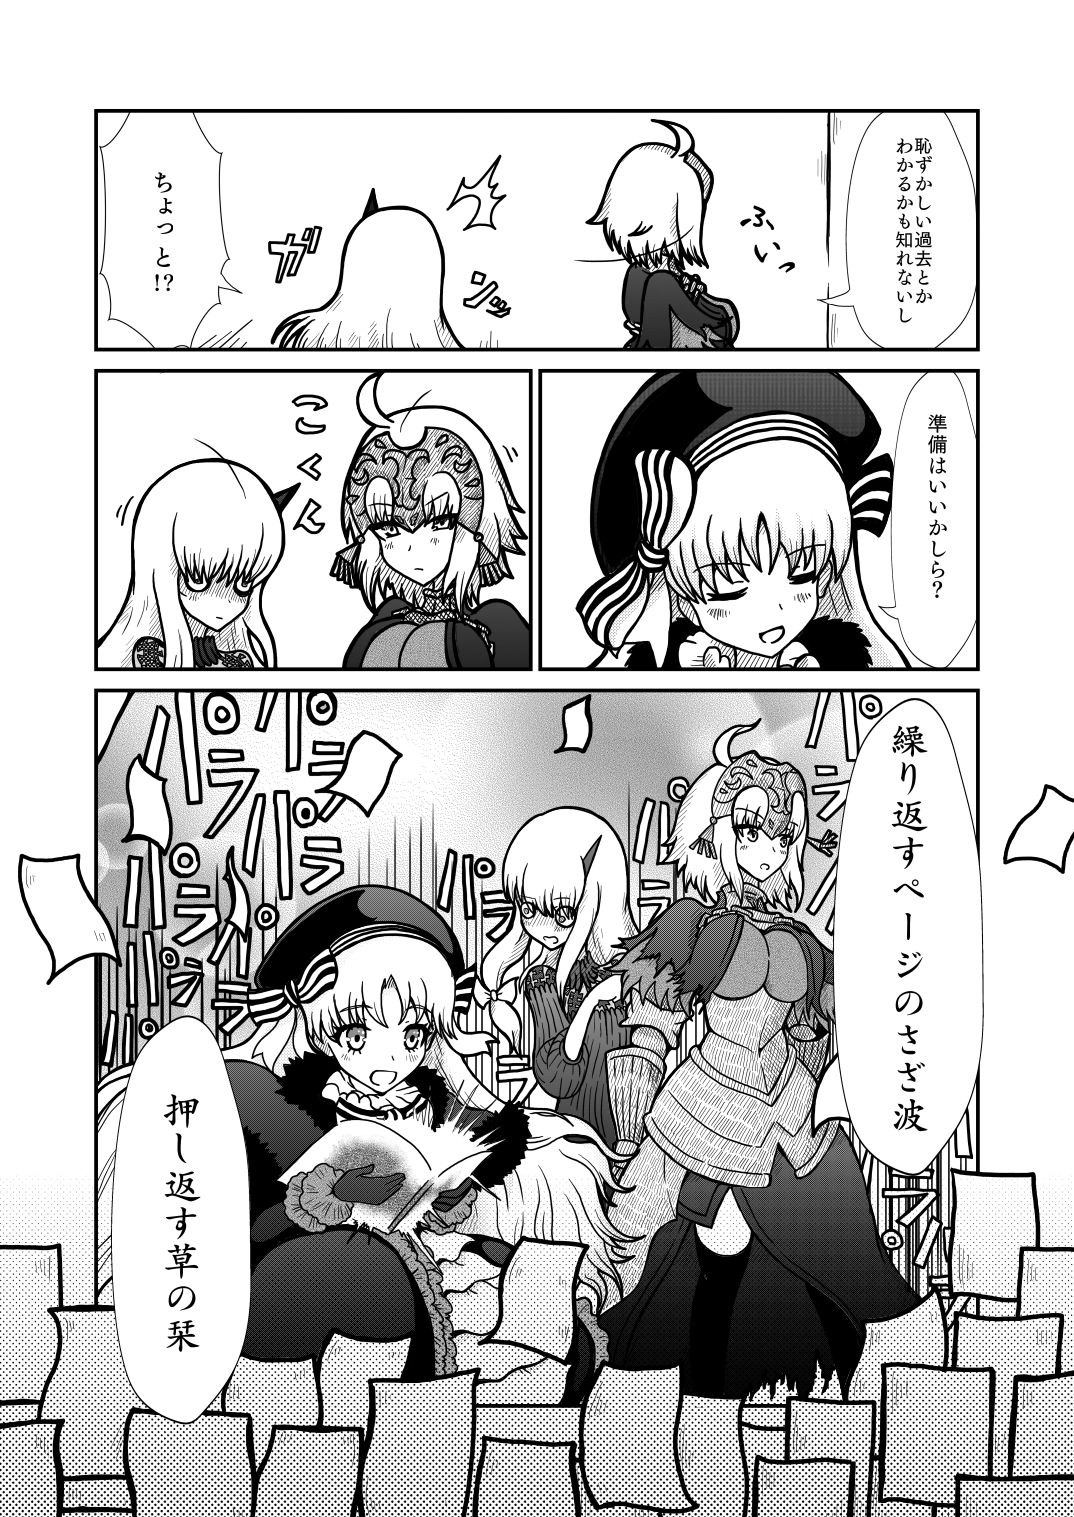 [Shigato] Jeanne x Lavi Dunwich Kai Kikou (Fate/Grand Order, Cthulhu Mythos) [Digital] 6